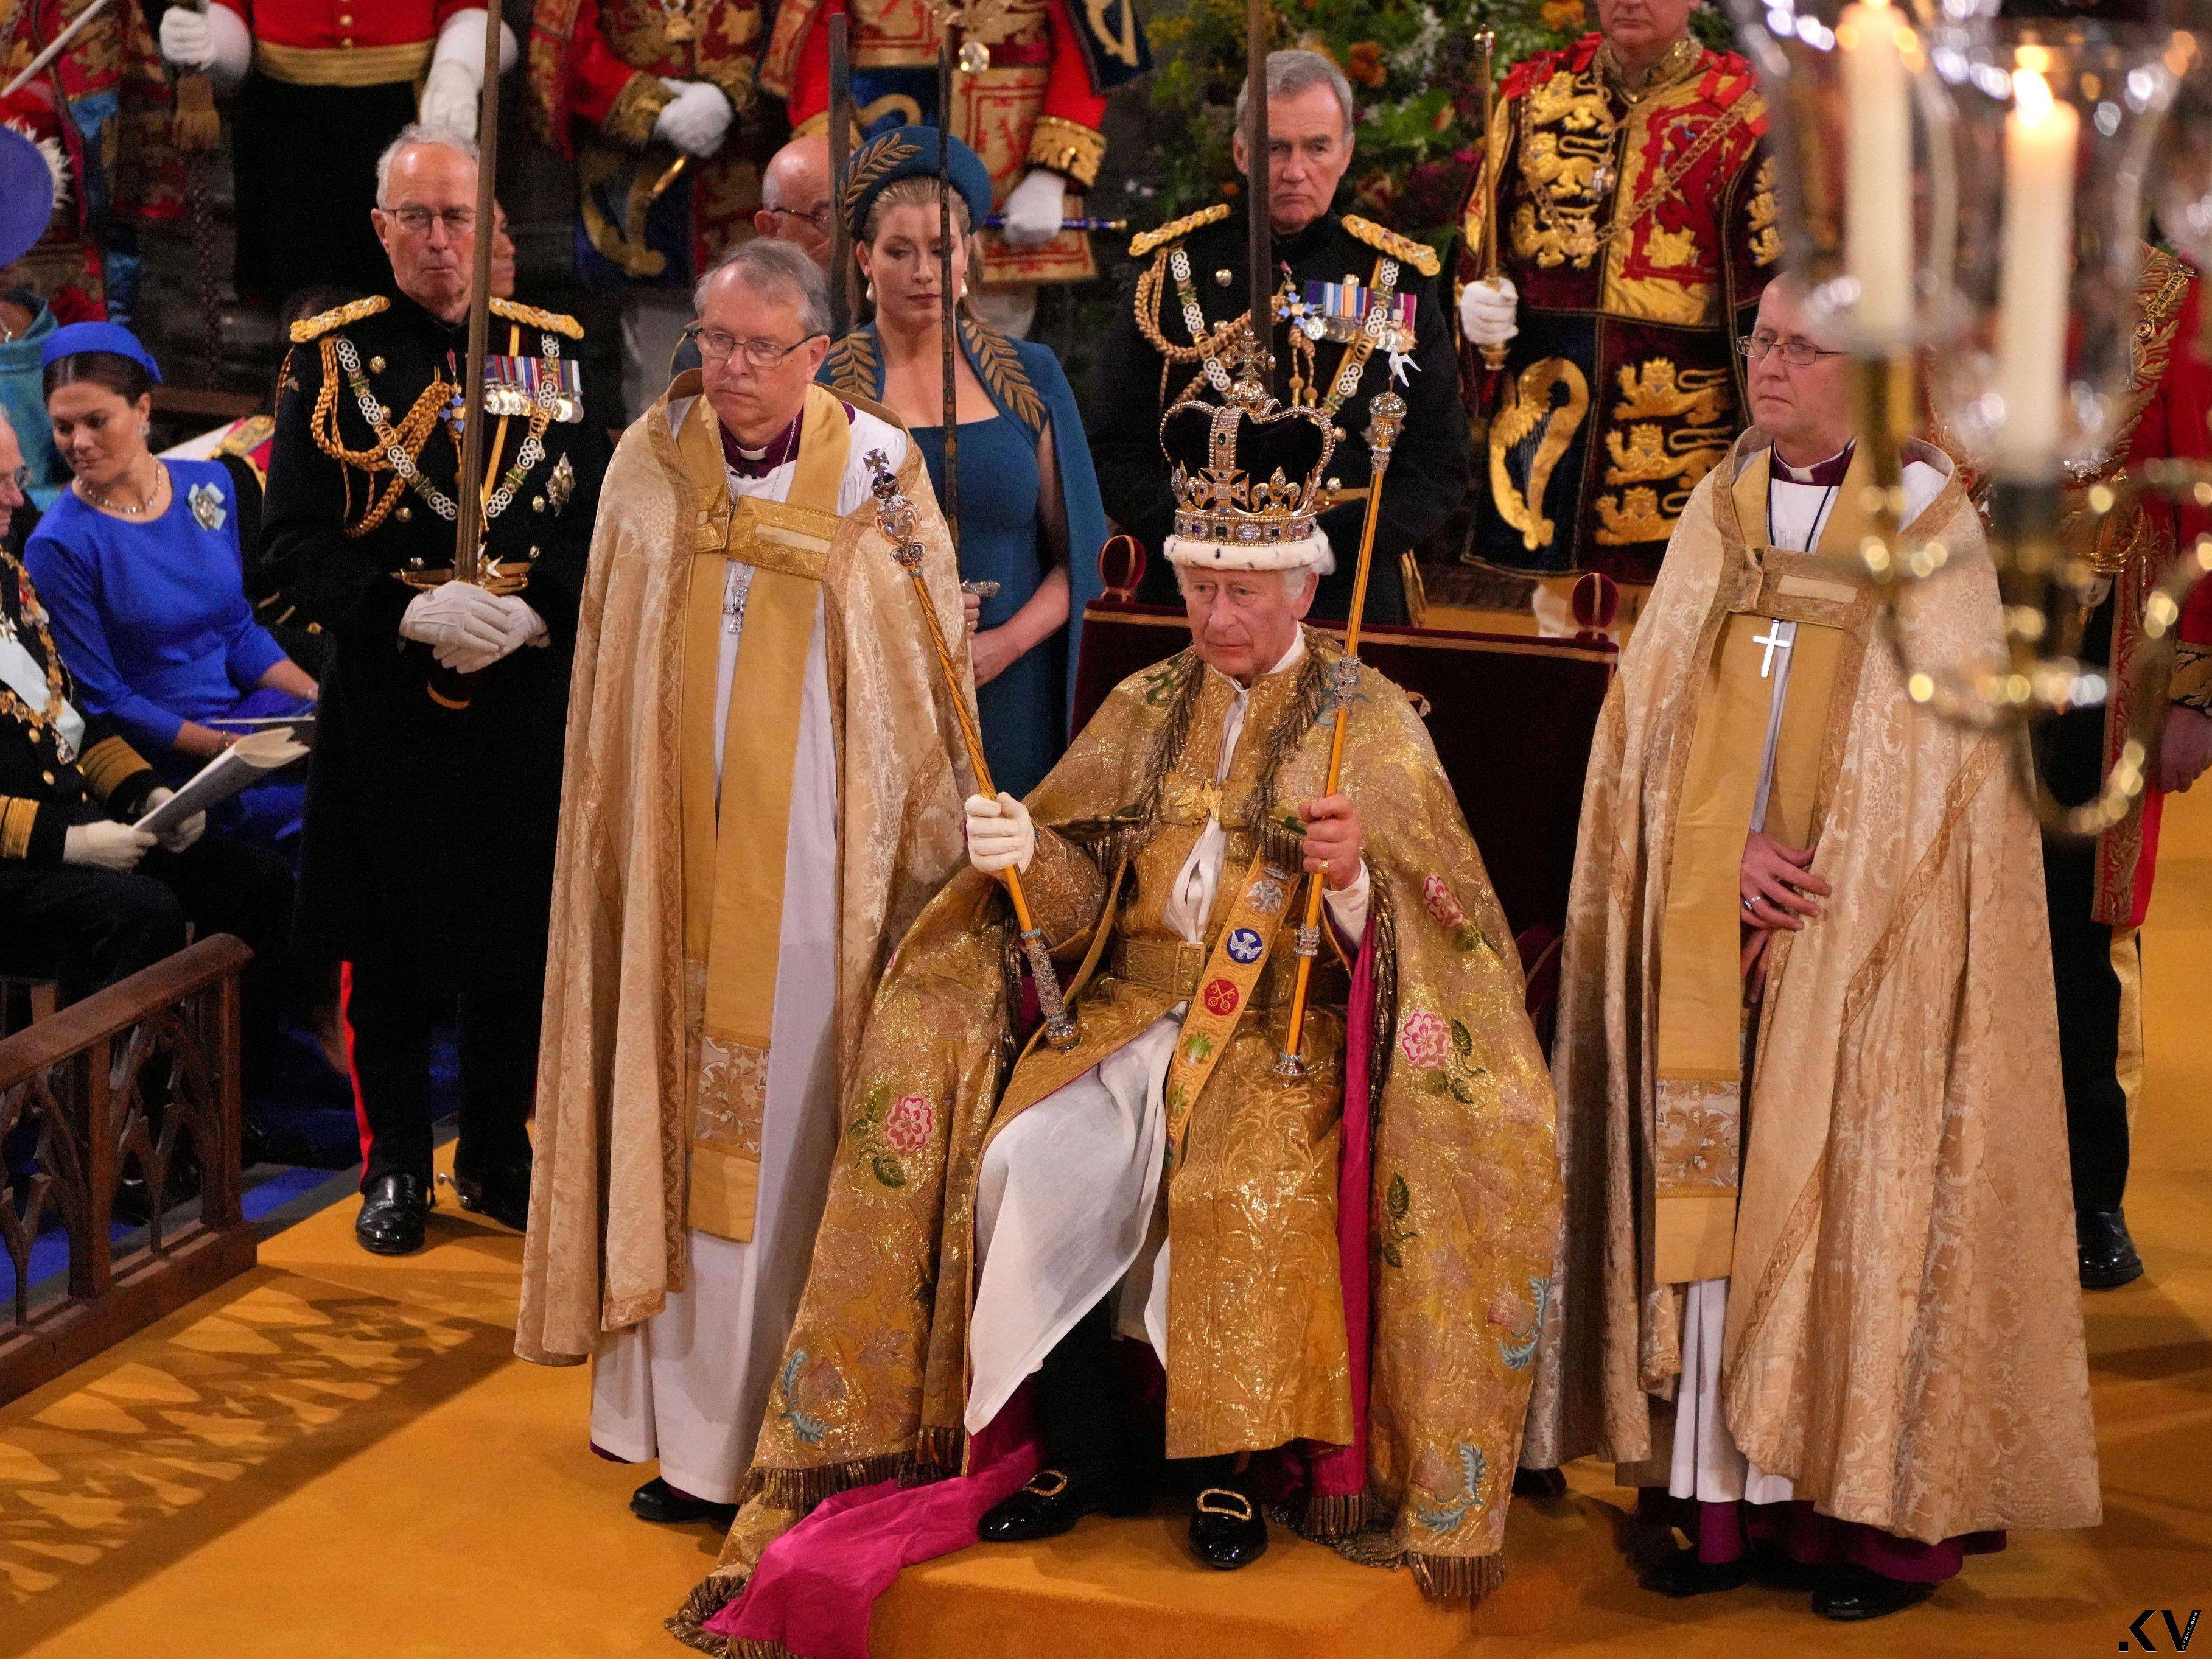 英国王加冕王冠一生只戴一次　礼成换戴闪耀317.4克拉巨钻冠冕 时尚穿搭 图2张